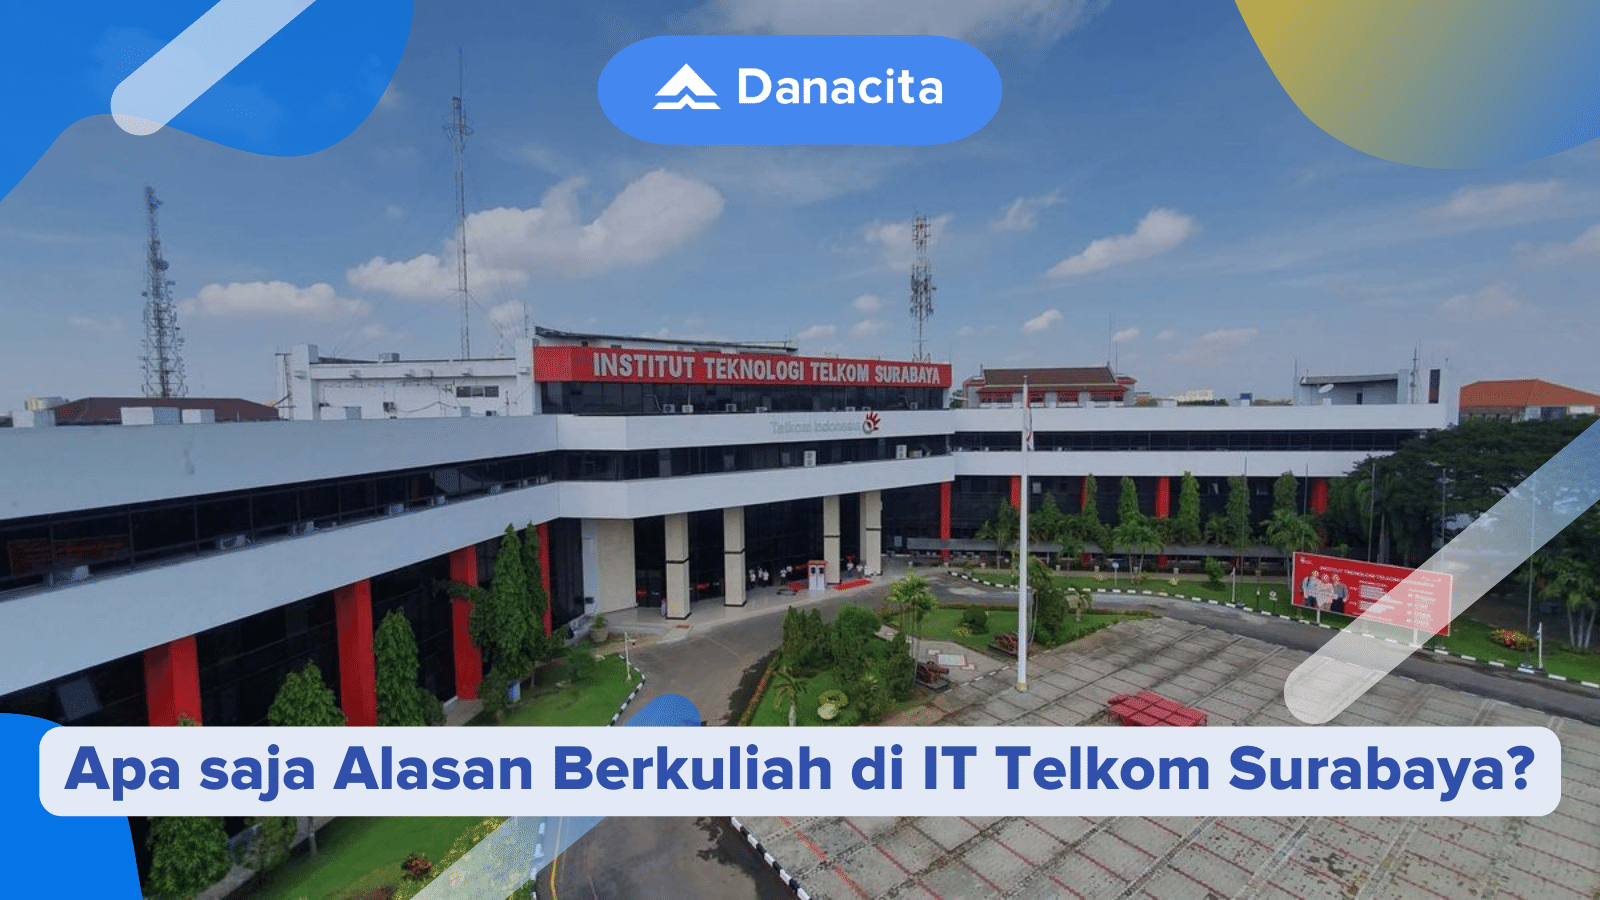 alasan-berkuliah-di-IT-Telkom-Surabaya